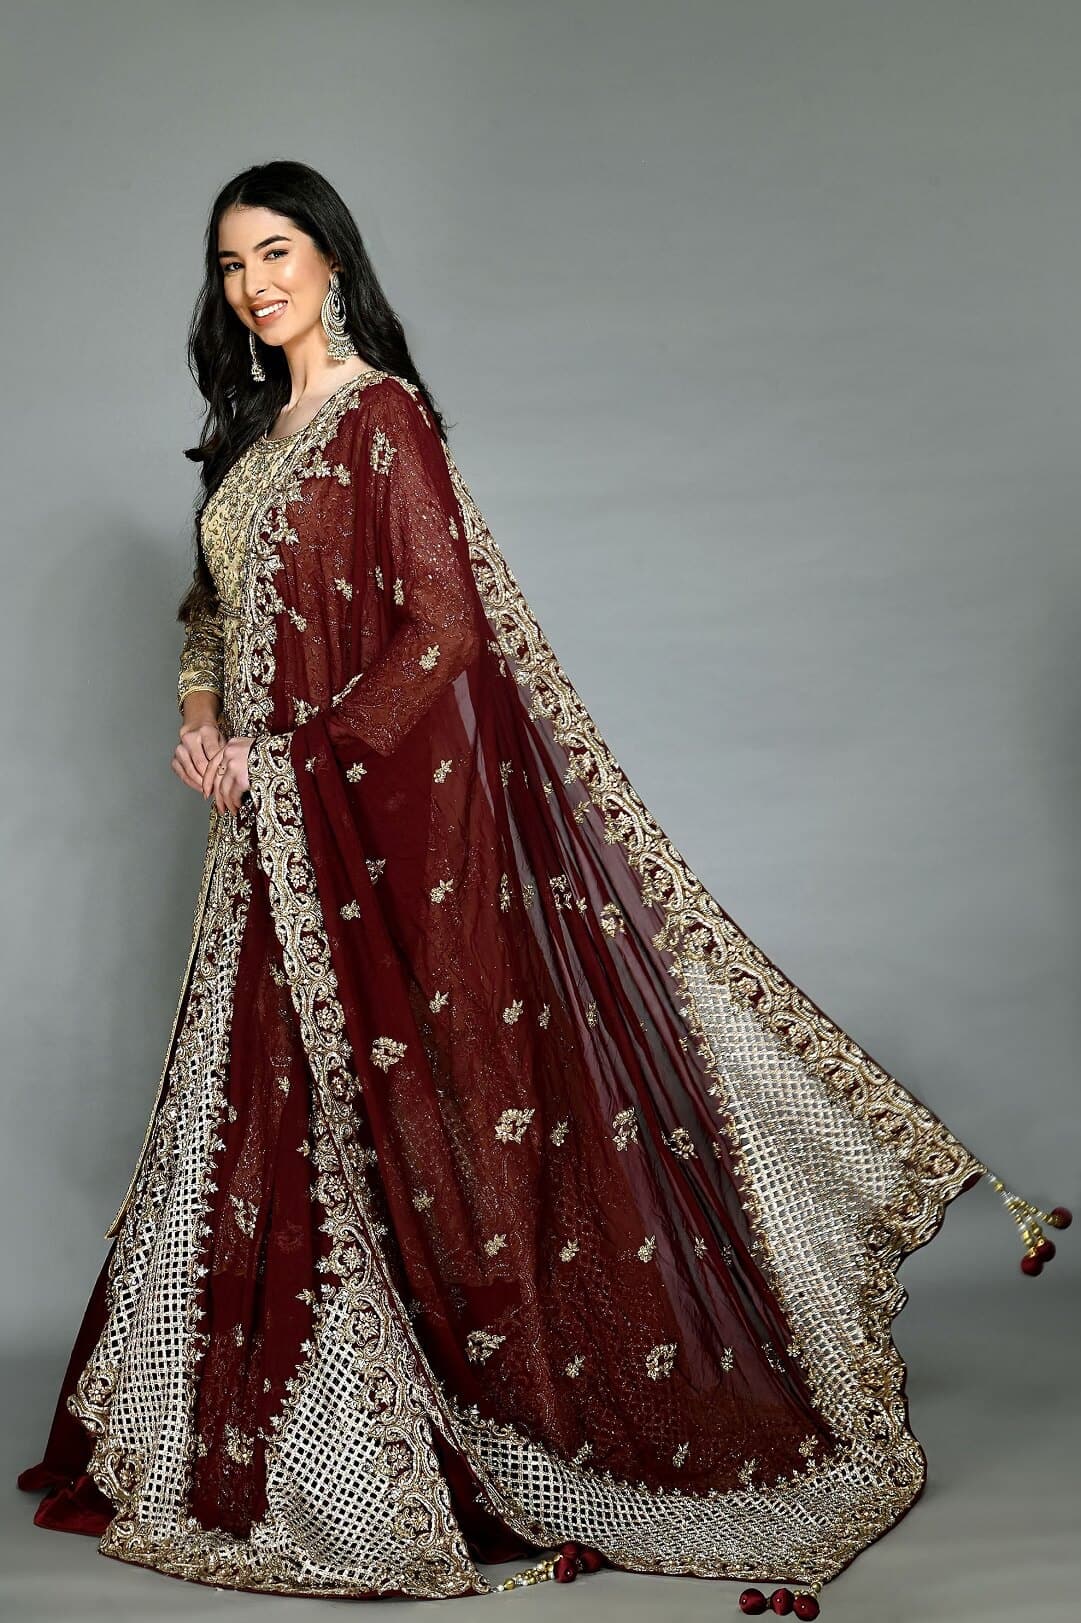 10+ Stunning Bridal Lehenga With Double Dupatta For The 2022 Brides!! | Red  wedding lehenga, Best indian wedding dresses, Bridal dress fashion